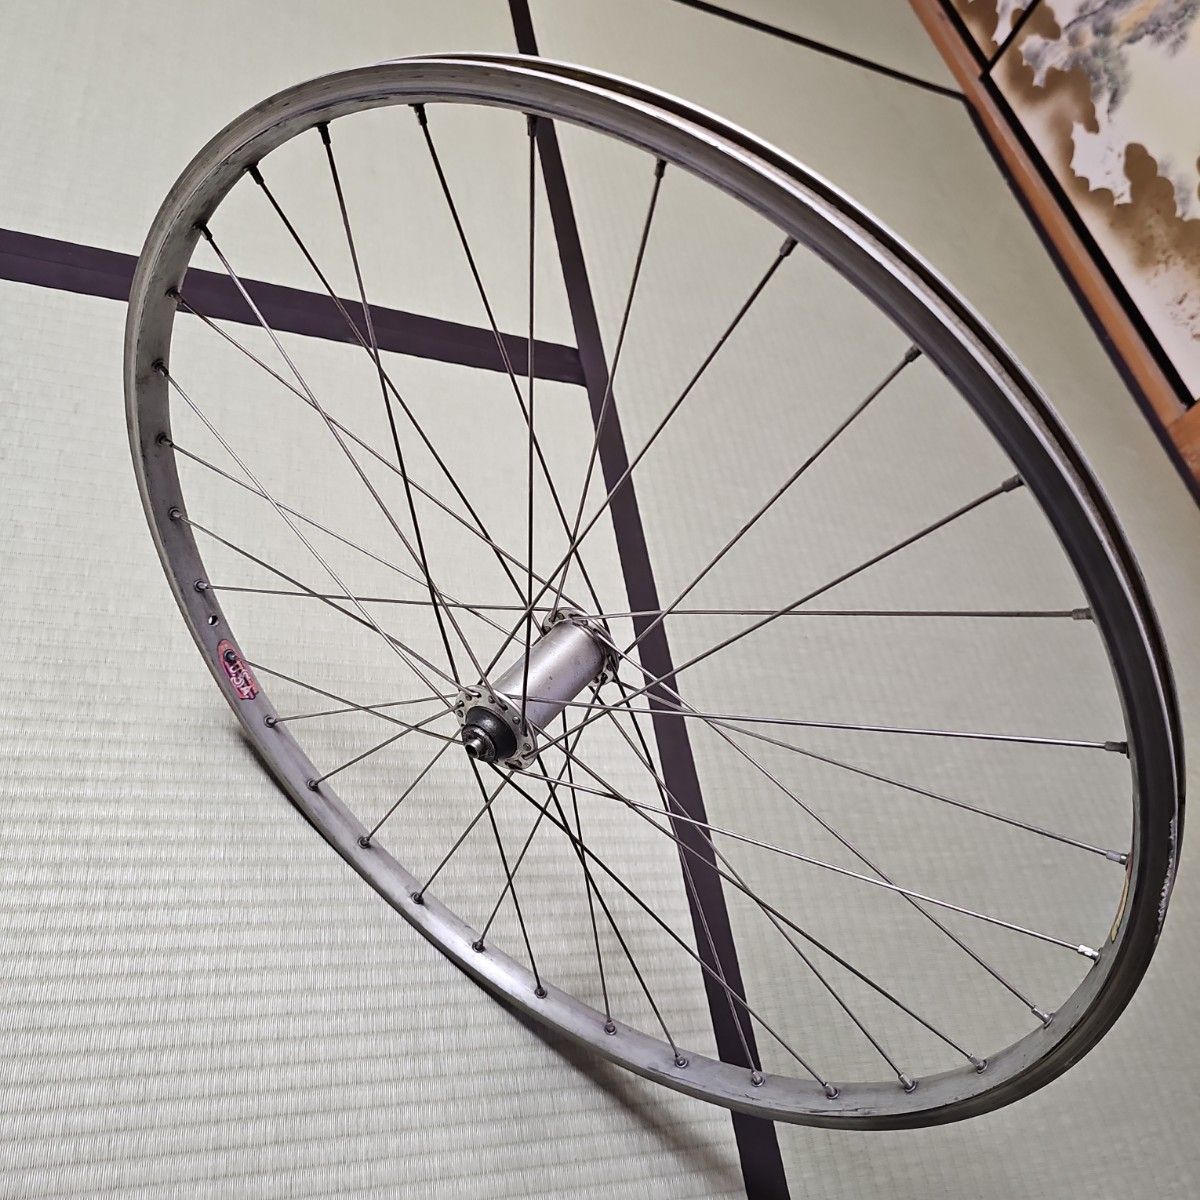 【平成レトロ/1990年代後半?】SHIMANO製品 自転車ホイール